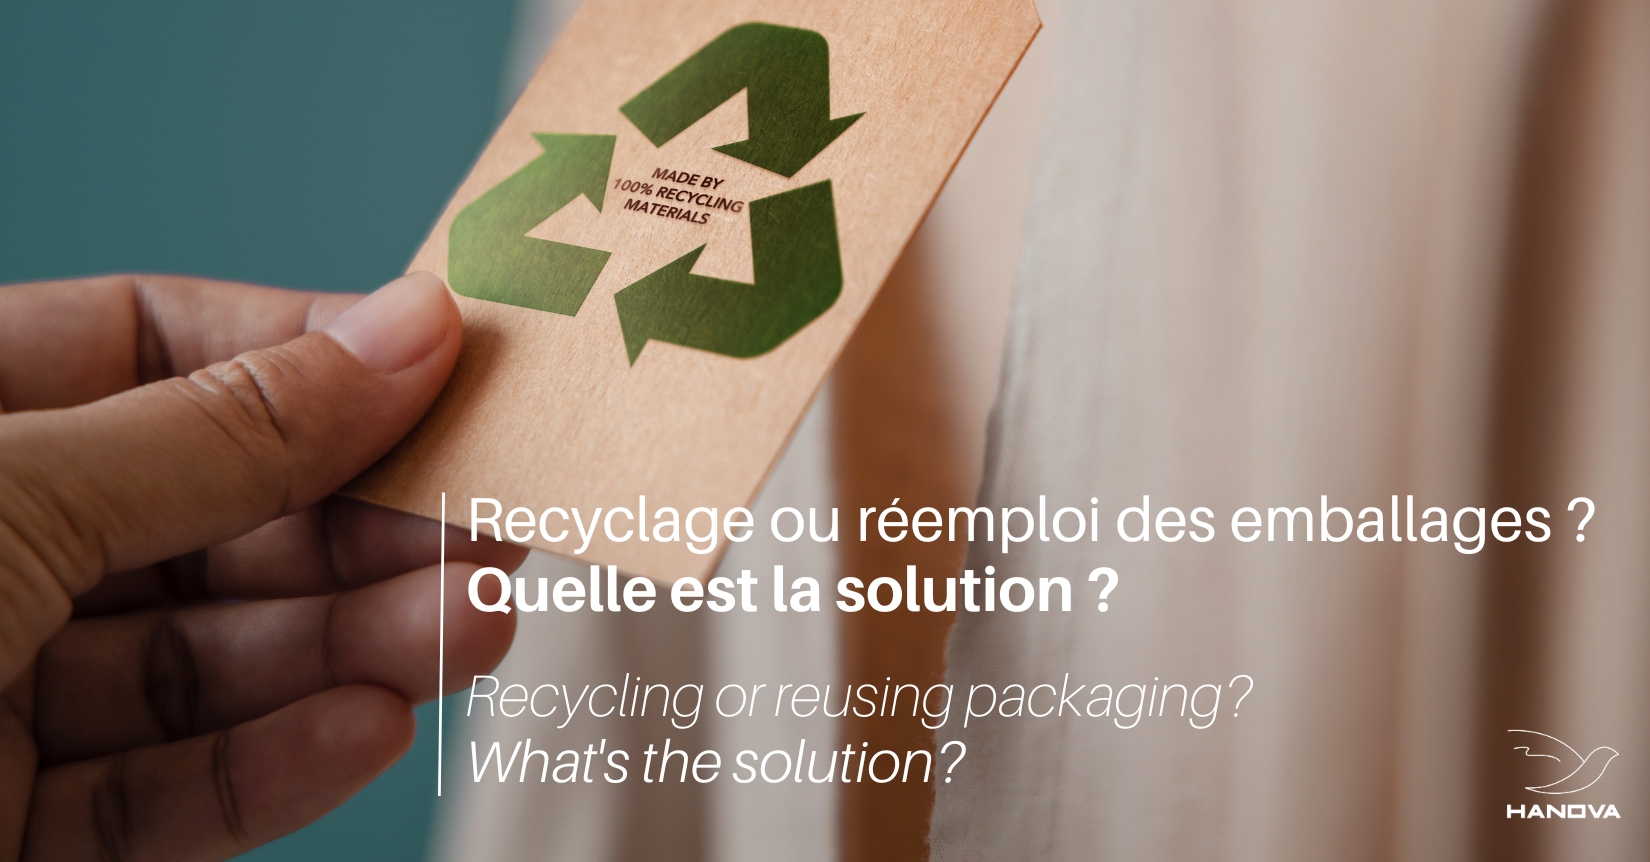 Nous souhaitons partager avec vous la position du Conseil National de l’Emballage (CNE) sur le réemploi et le recyclage des emballages, deux solutions complémentaires pour réduire les impacts environnementaux liés au cycle de production de la matière.